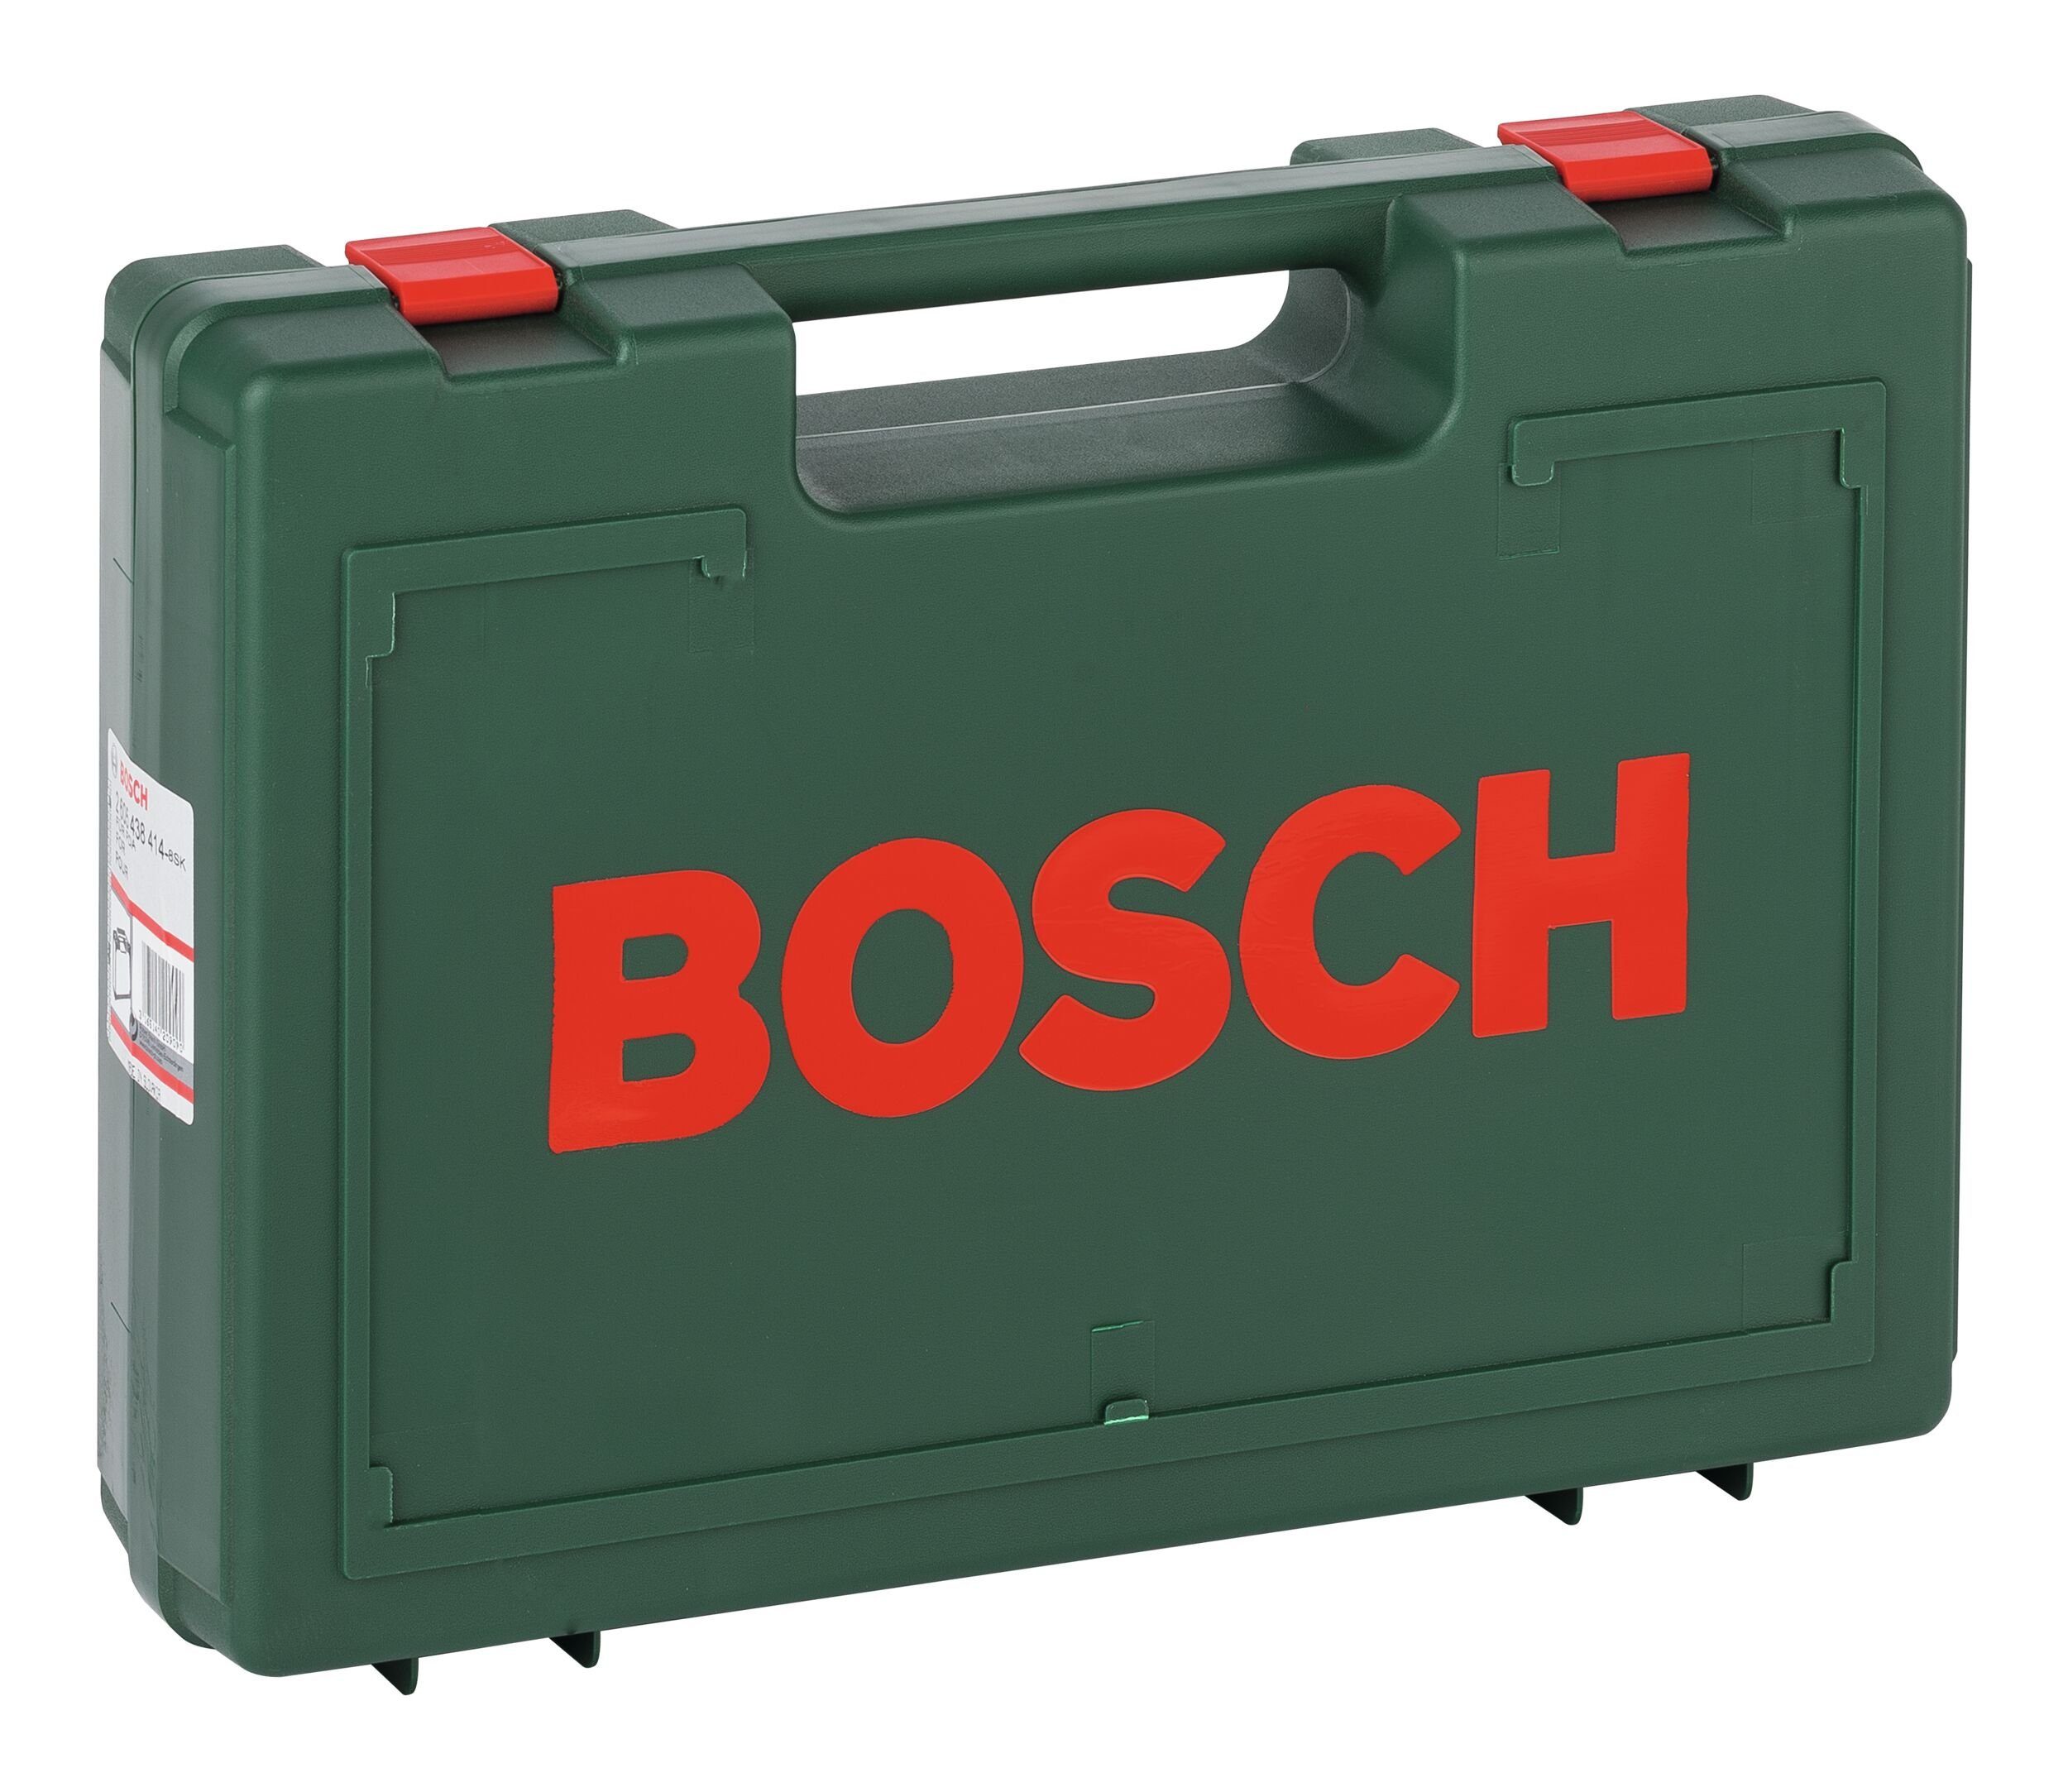 Home mm 110 391 x Bosch Werkzeugkoffer, - & 300 Kunststoffkoffer x Garden